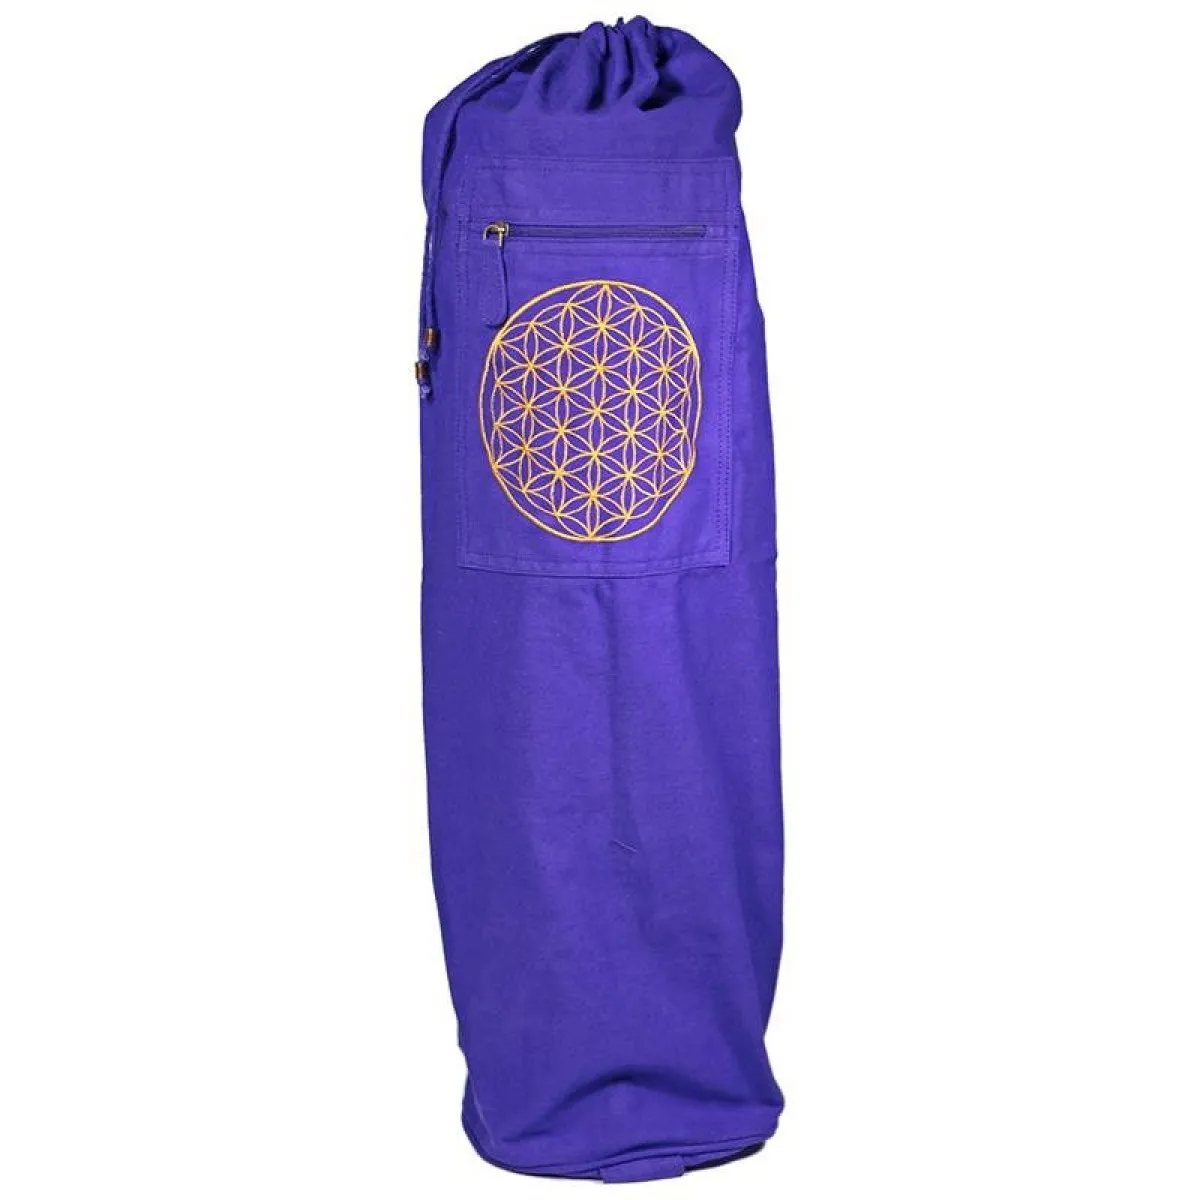 Tasche für Yogamatte violett mit Blume des Lebens in gold 74x19 cm